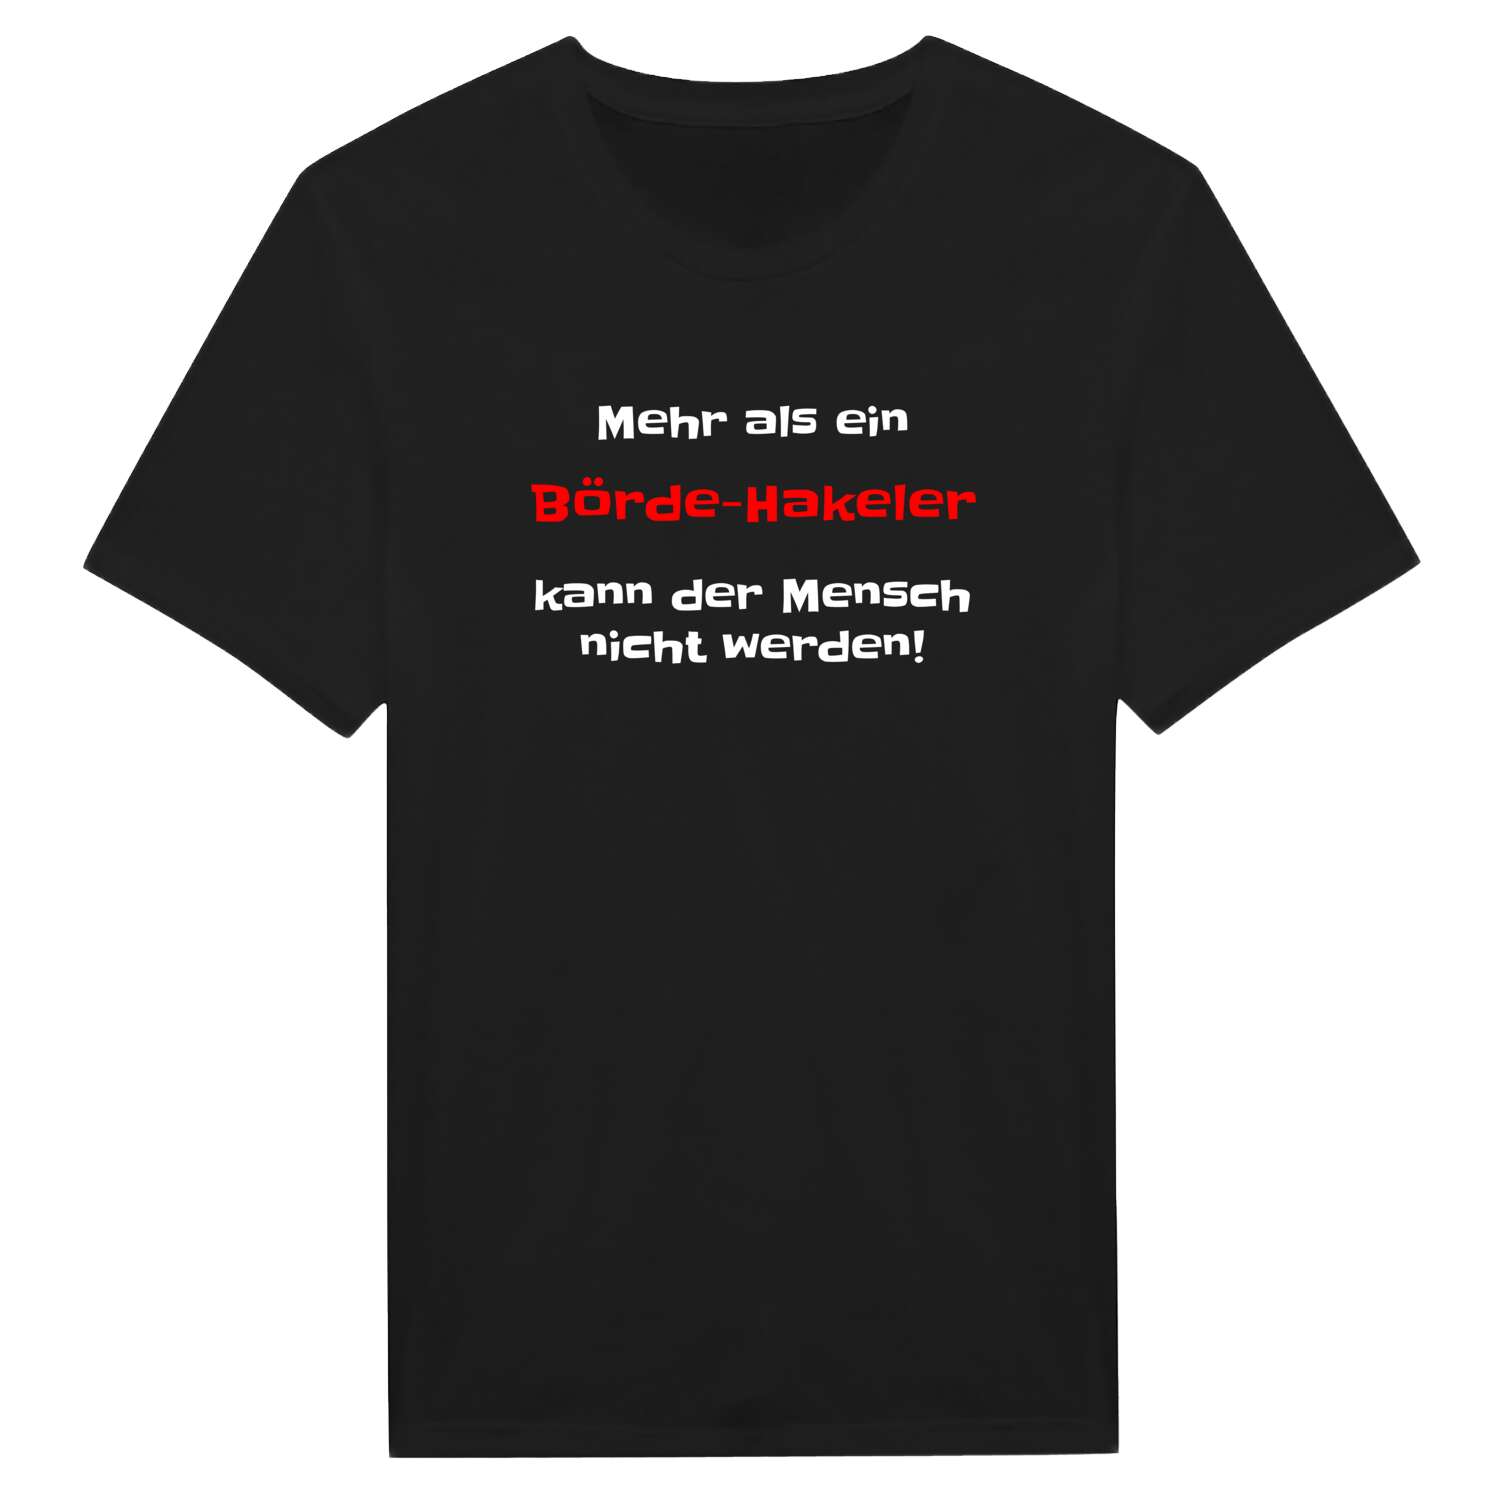 Börde-Hakel T-Shirt »Mehr als ein«